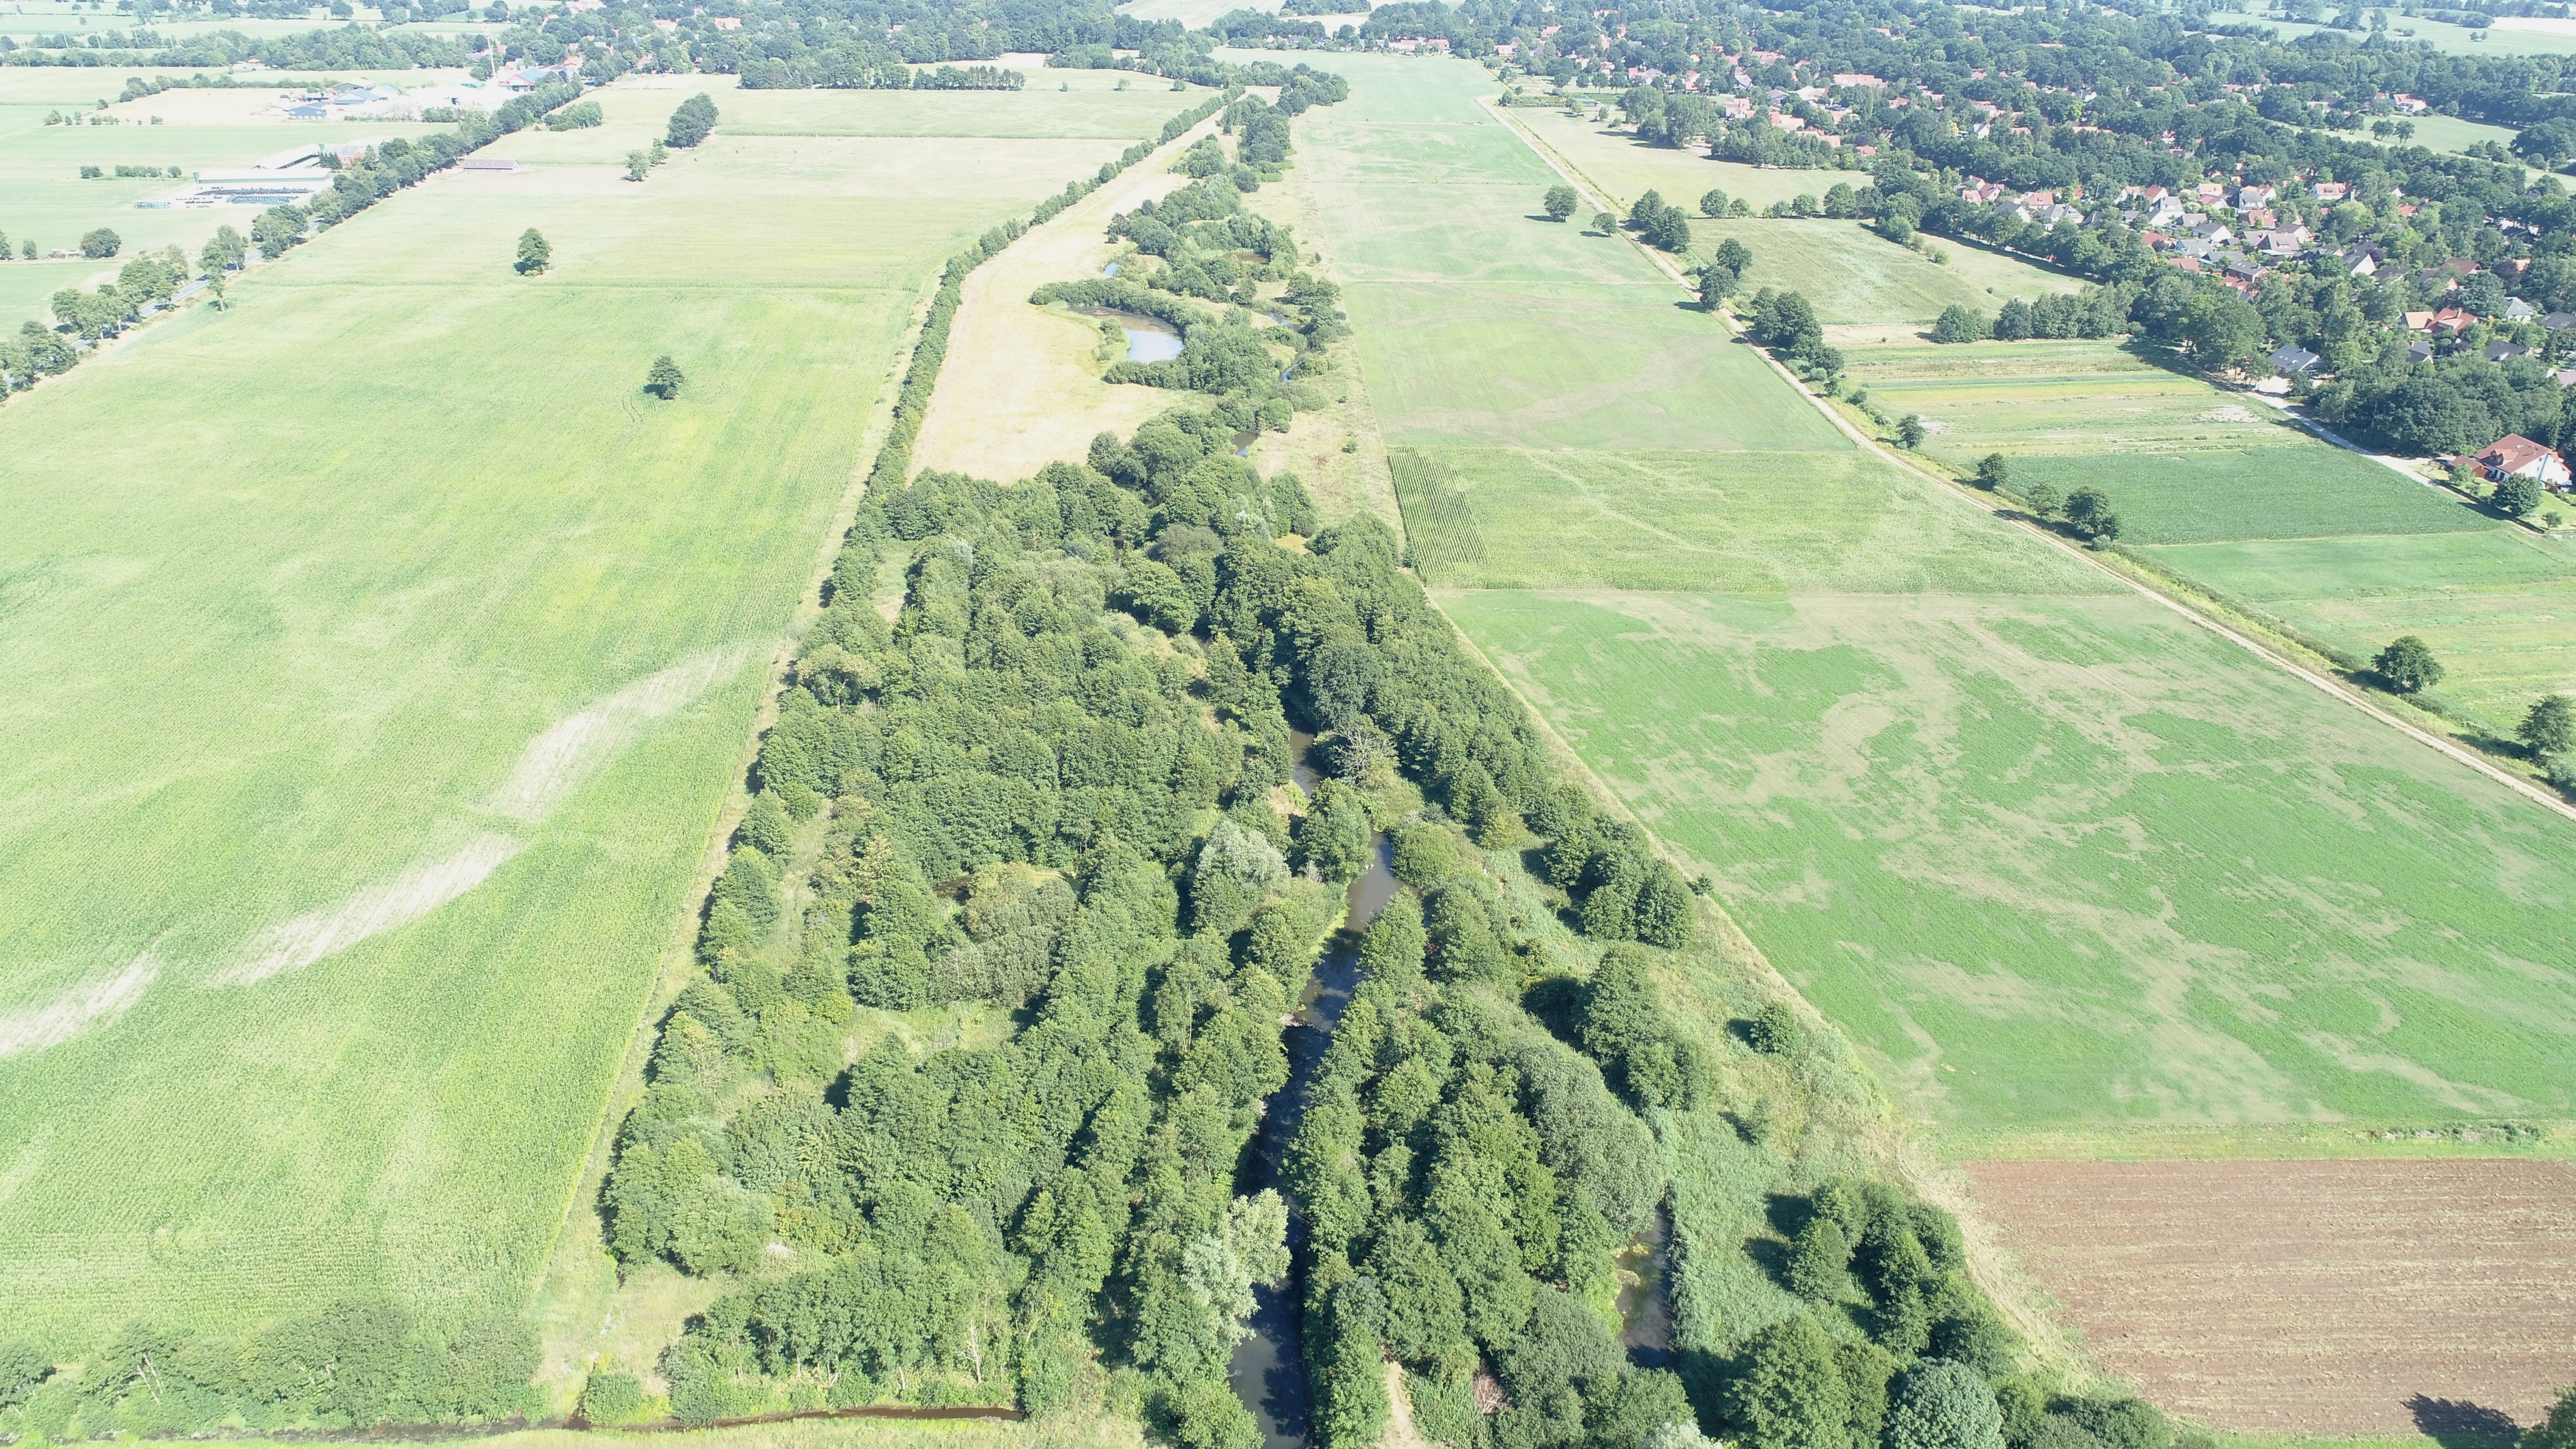 Luftbildaufnahme des sehr breiten Entwicklungskorridors mit Bäumen und Sträuchern, der den Fluss Wümme von landwirtschaftlichen Flächen und Grünland abgrenzt.